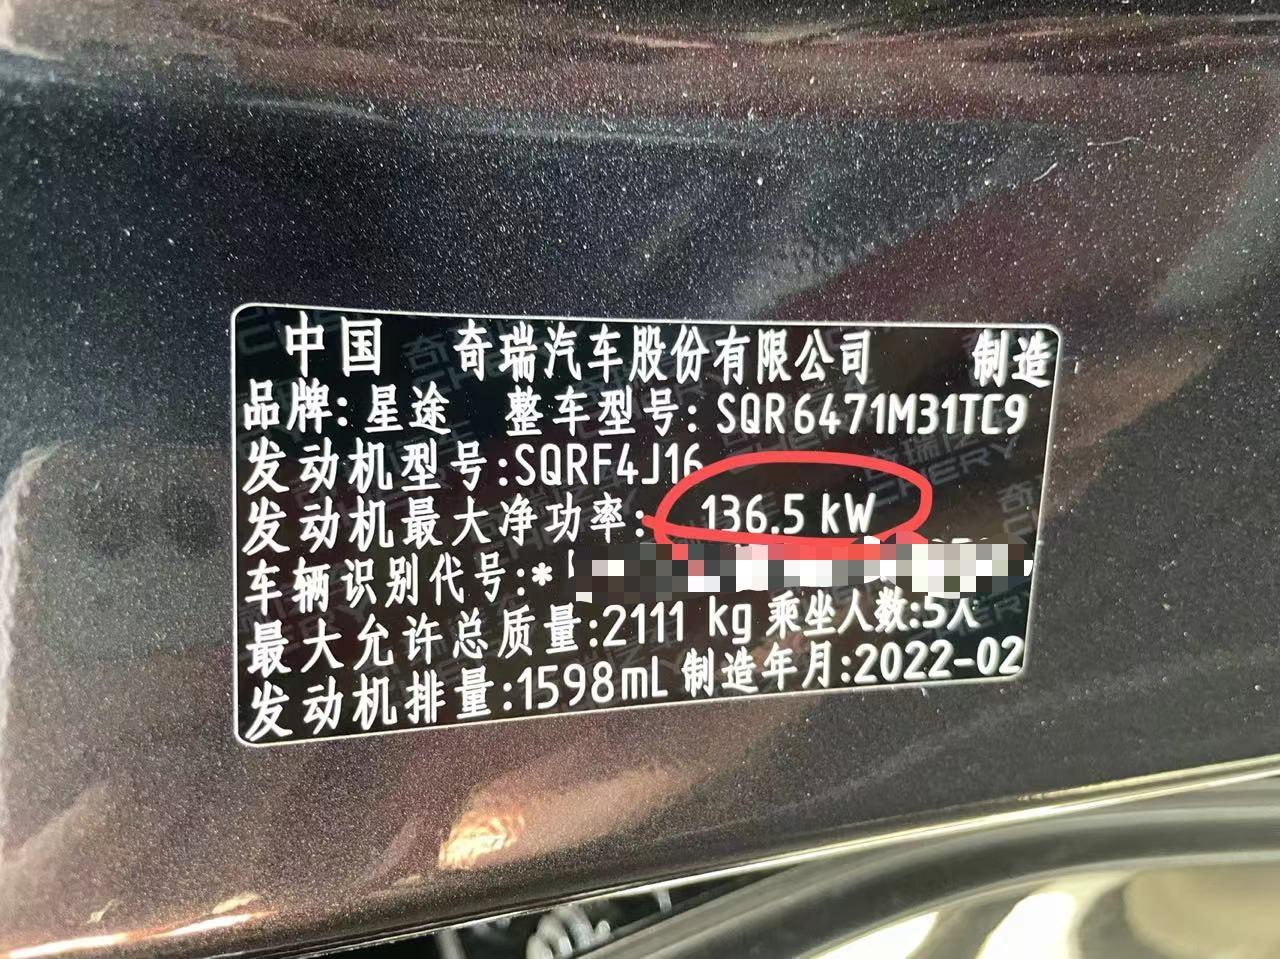 星途TX超能2号，车身发动机标识与宣传不一致。为什么资料参数和合格证上都写的是145kw，车身铭牌上写的是136.5kw